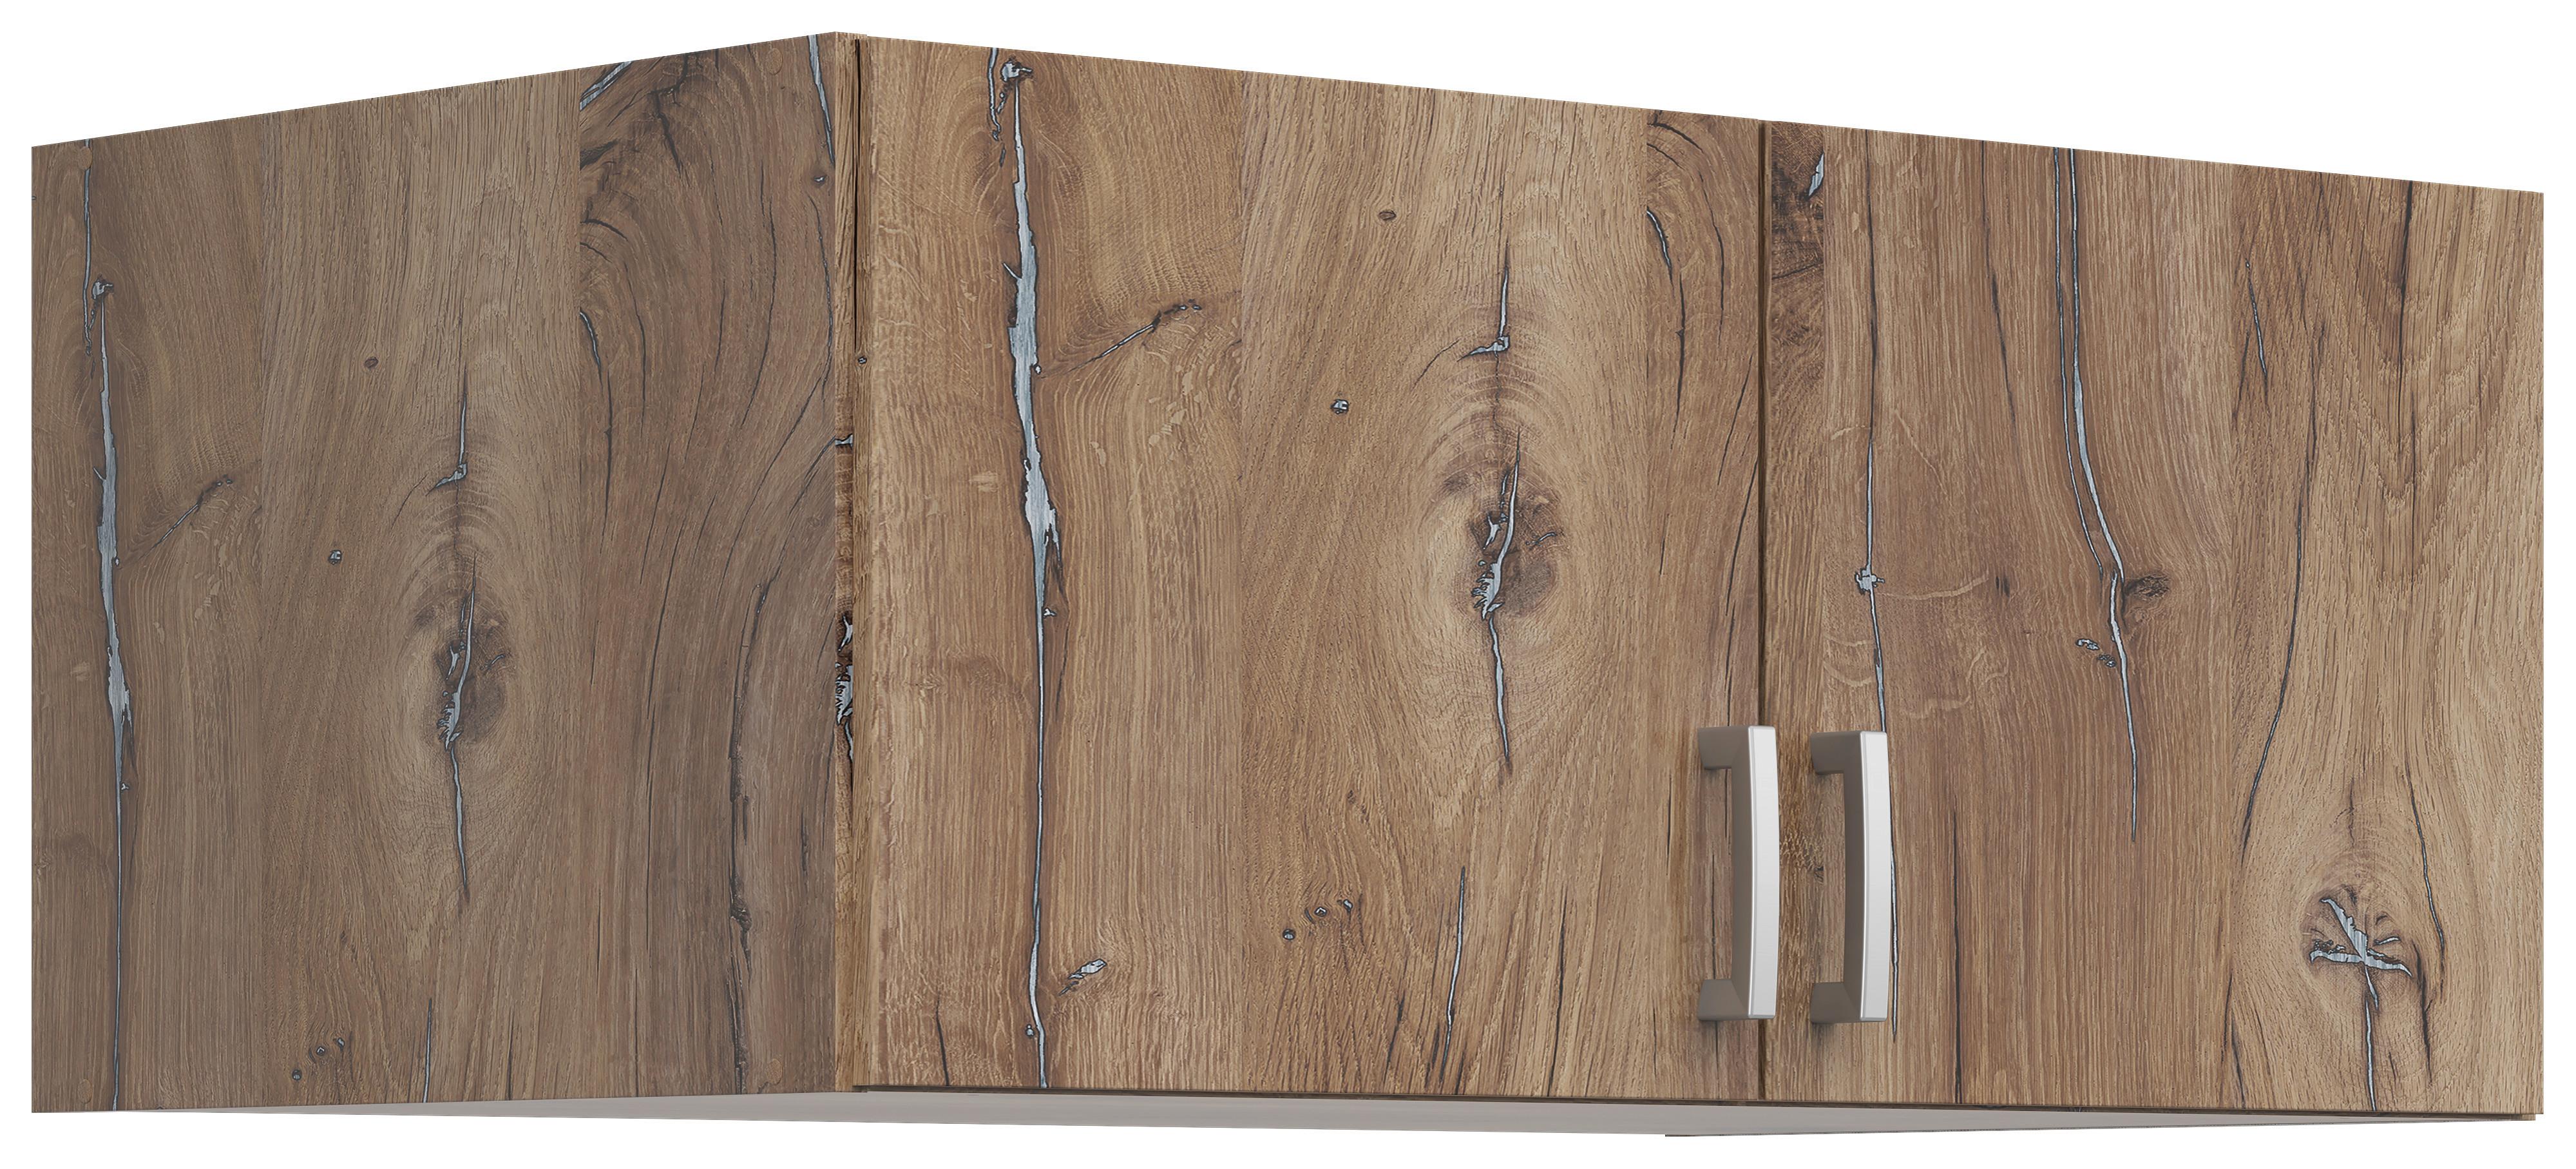 Nástavec Brando 91cm Dekor Dub Flagstaff - barvy dubu/barvy stříbra, Konvenční, kompozitní dřevo/plast (91cm)